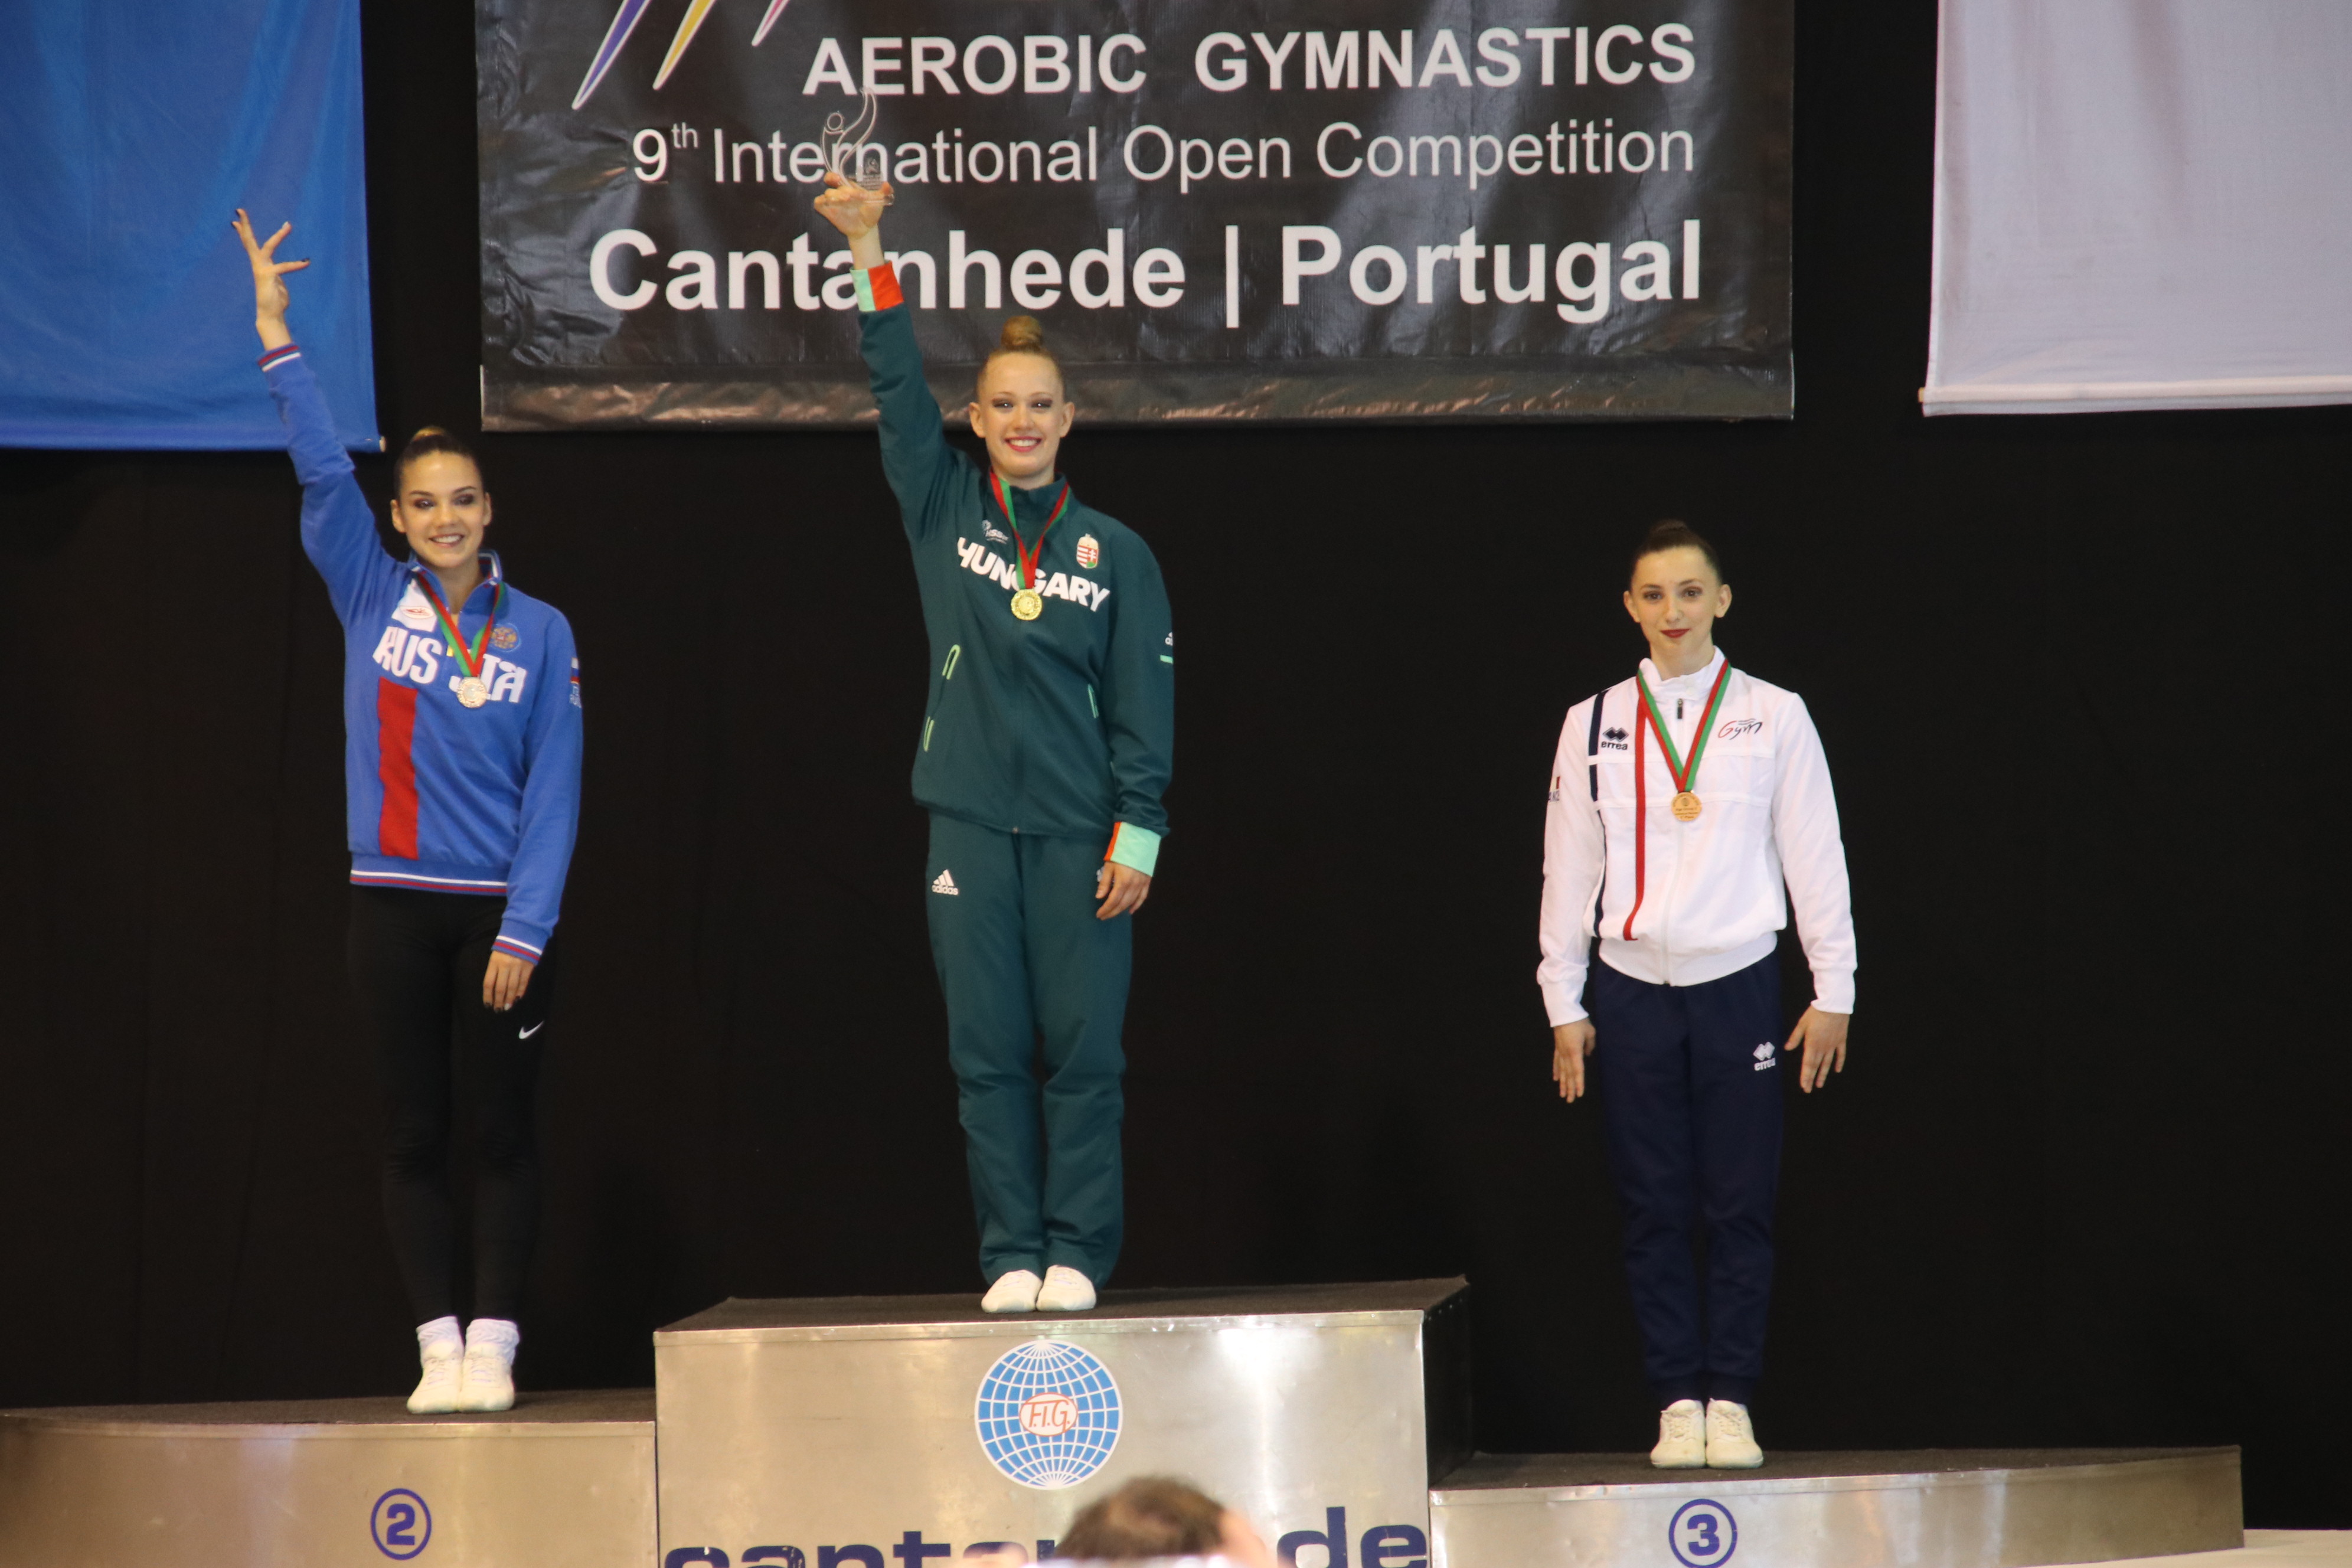 Trois Gymnastes représentent la France à Cantanhede